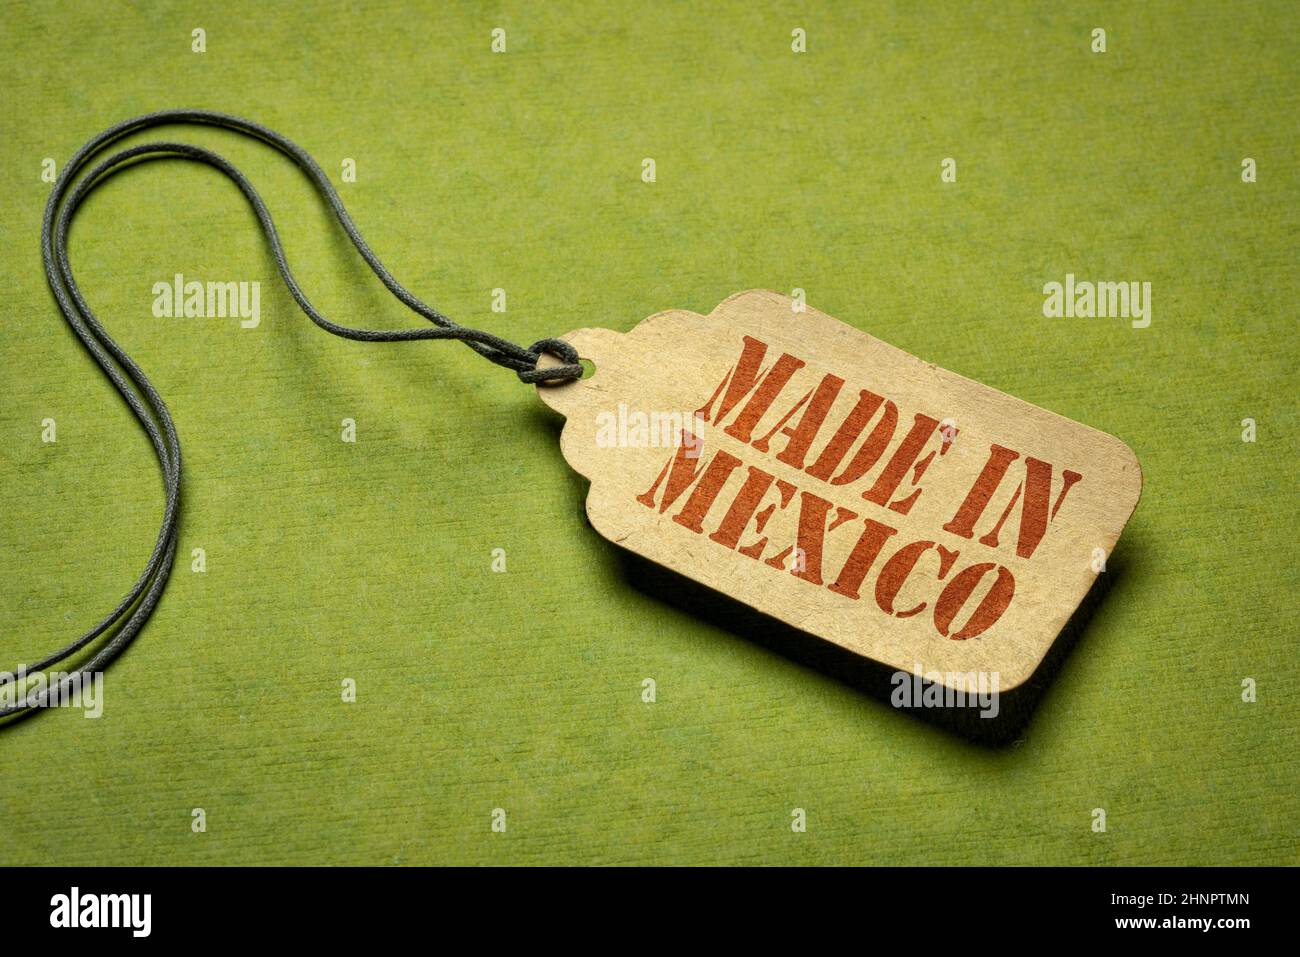 Made in Mexico sign - testo stencil rosso su un'etichetta prezzo contro carta verde testurizzata Foto Stock